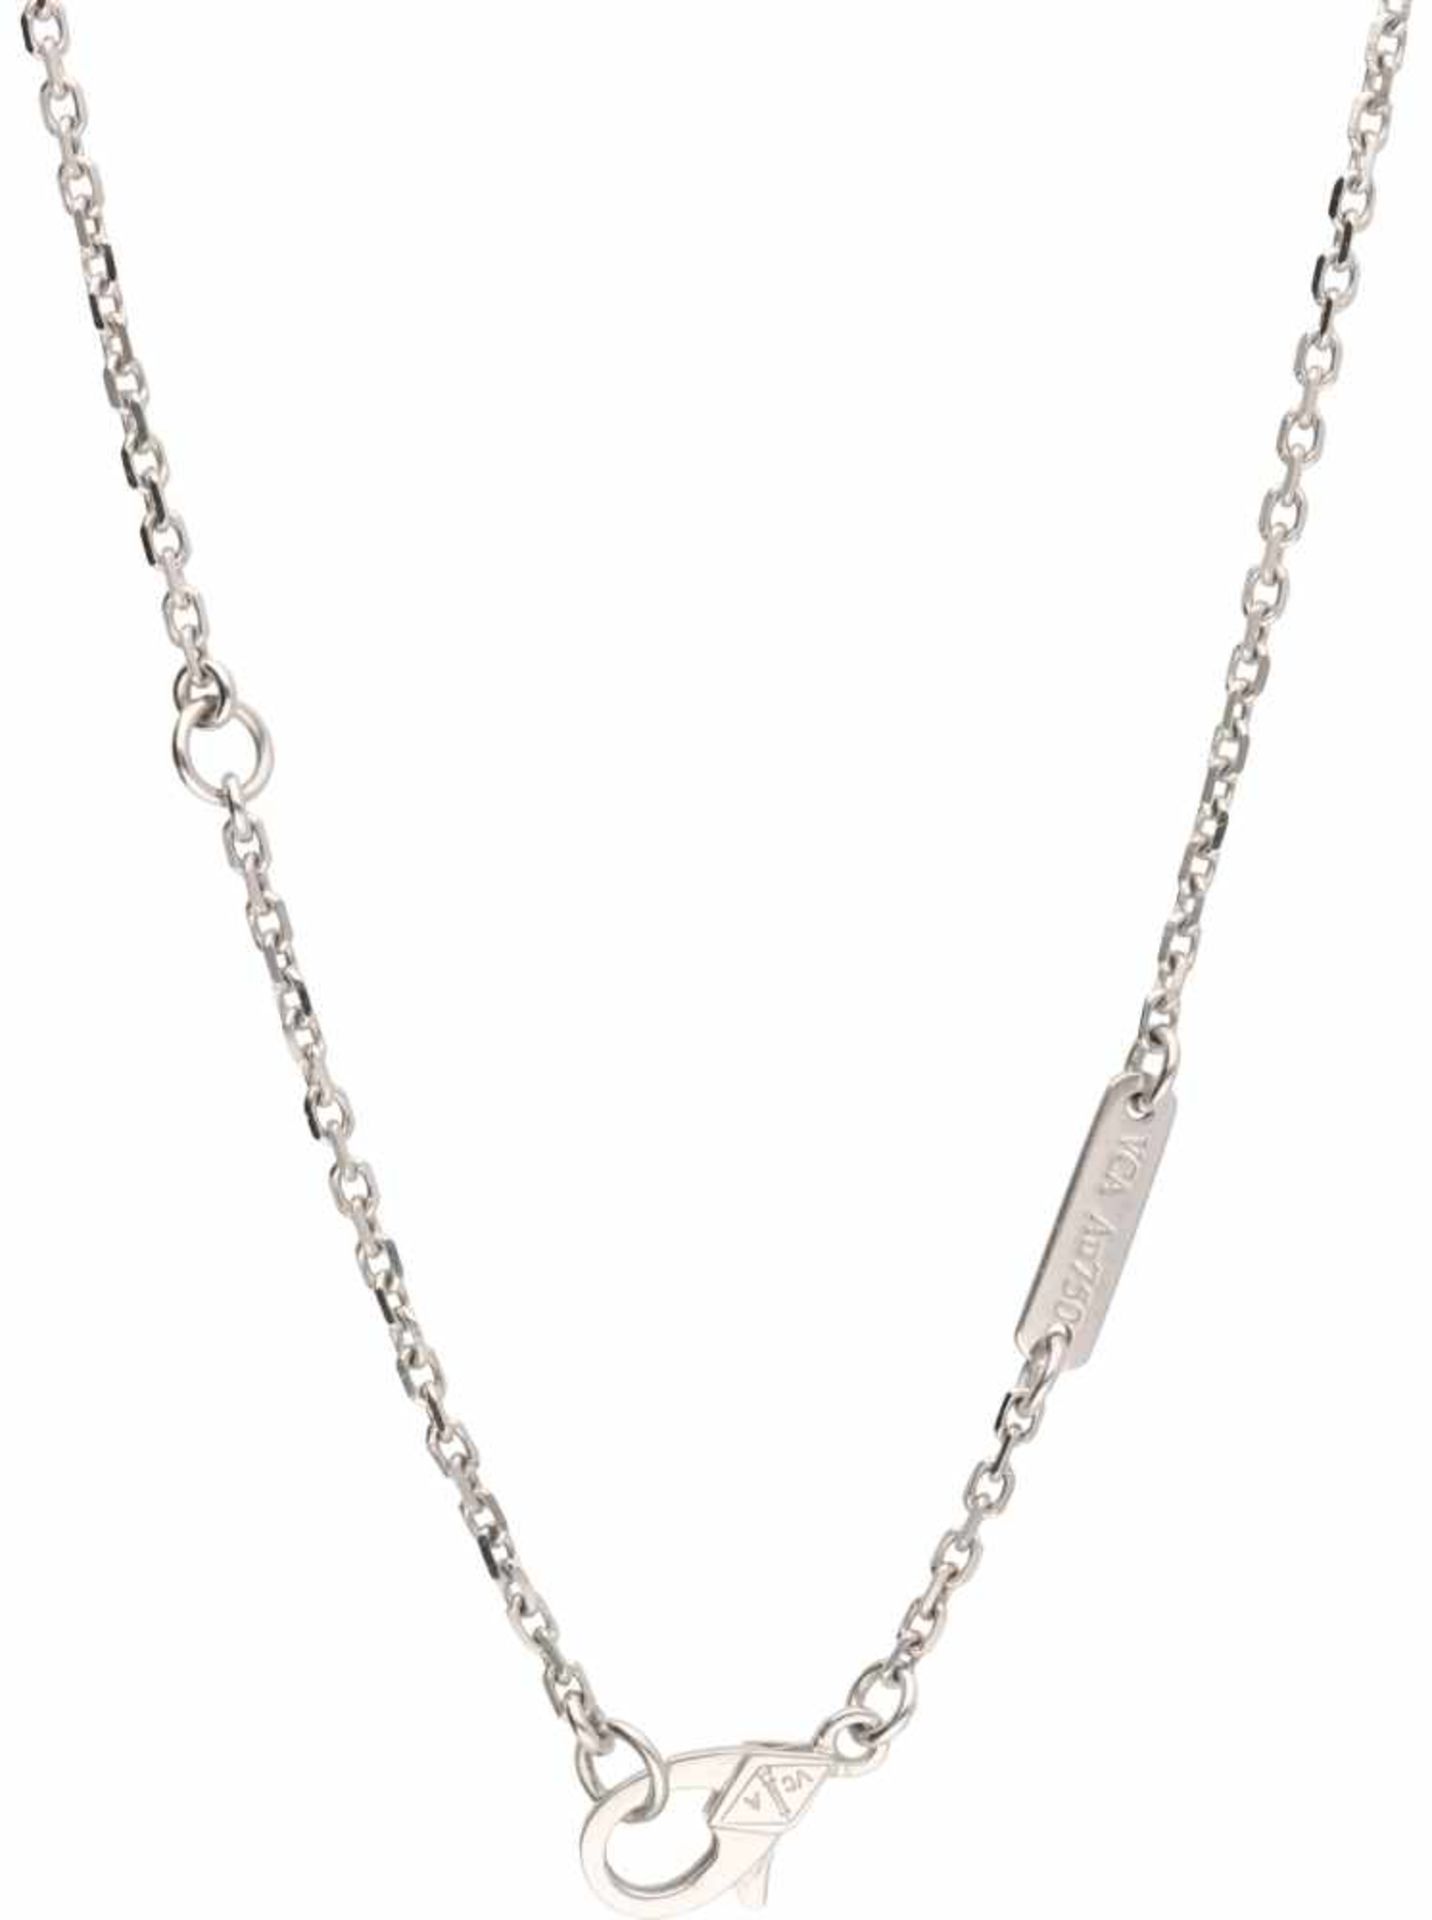 Van Cleef & Arpels necklace with Magic Alhambra pendant white gold, ca. 0.88 carat diamond - 18 ct. - Bild 3 aus 7